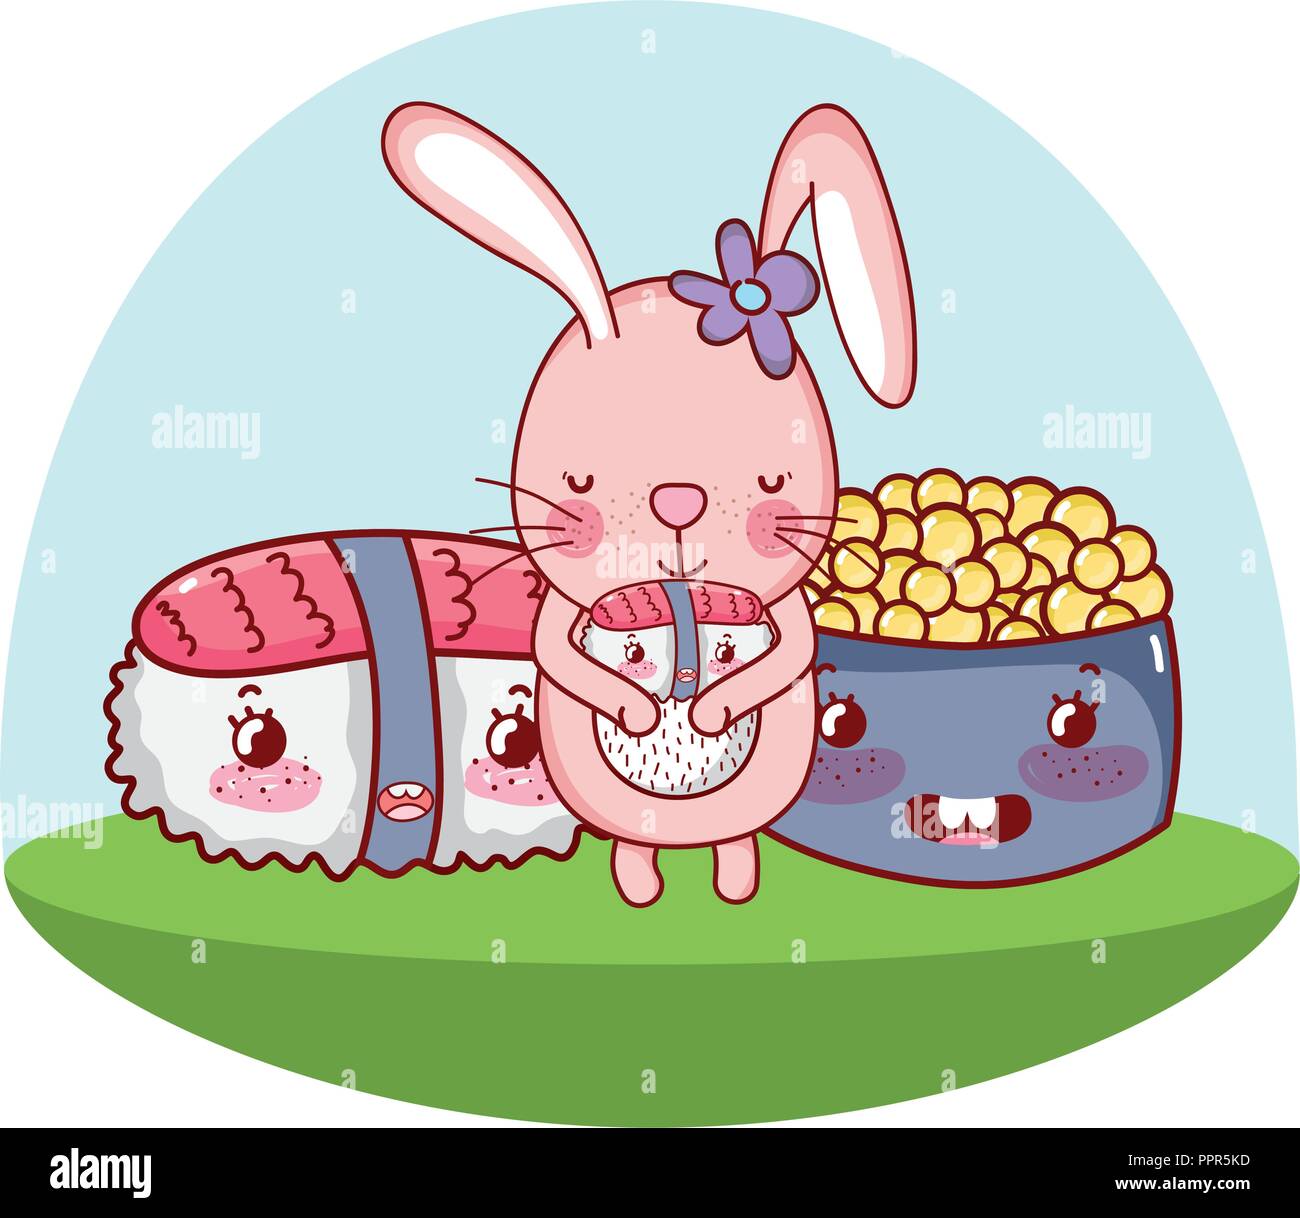 Bunny and food kawaii Stock Vector Image & Art - Alamy